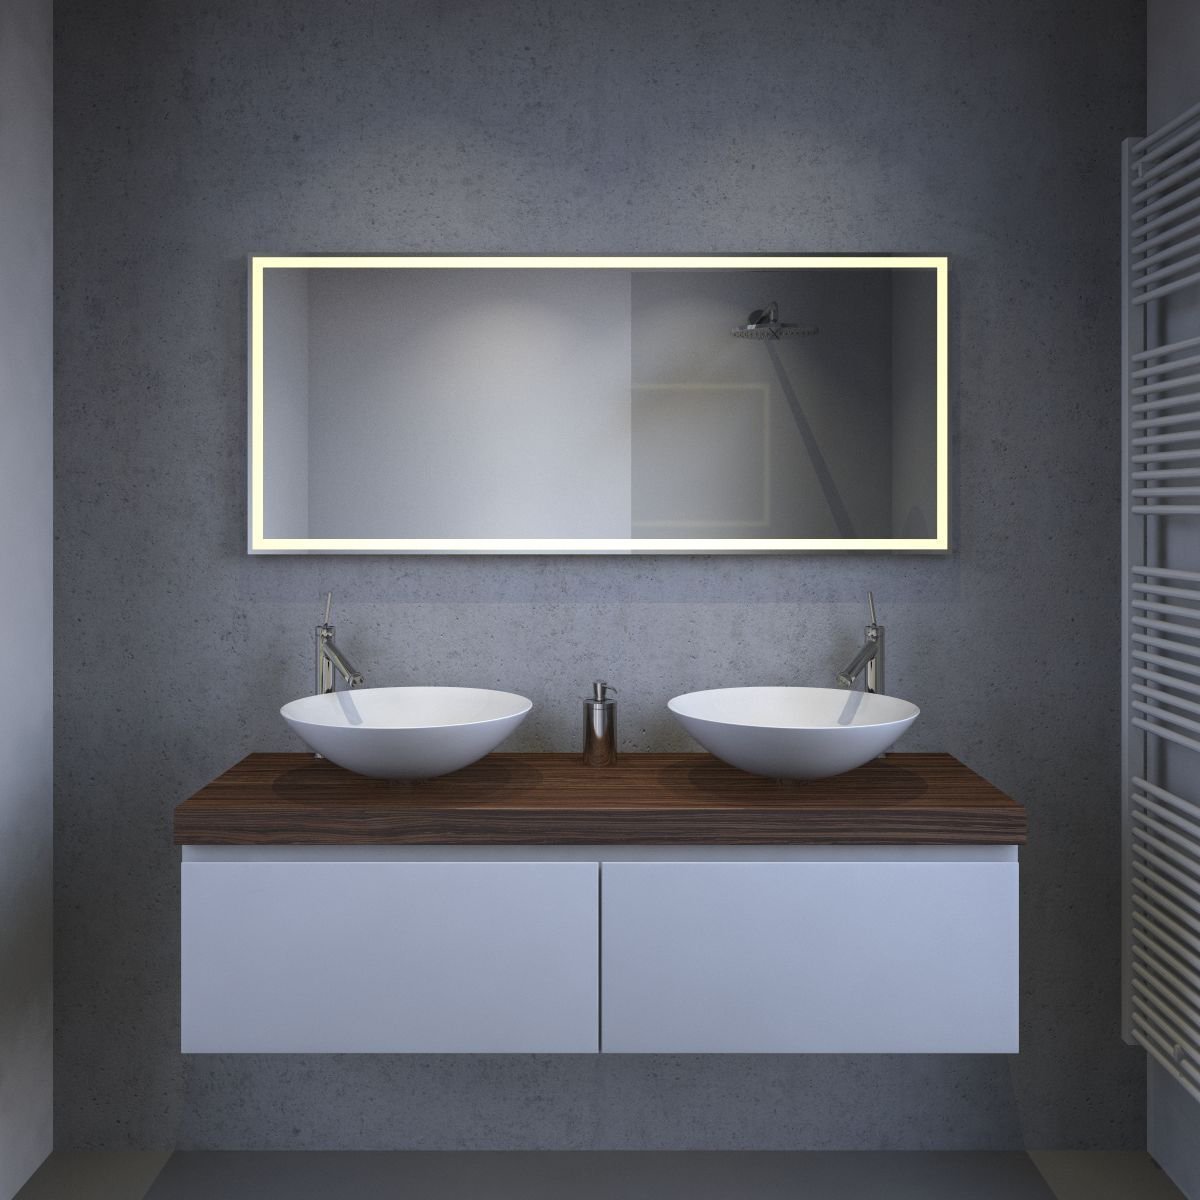 Strak Design Met Asymmetrische Spiegel In De Badkamer